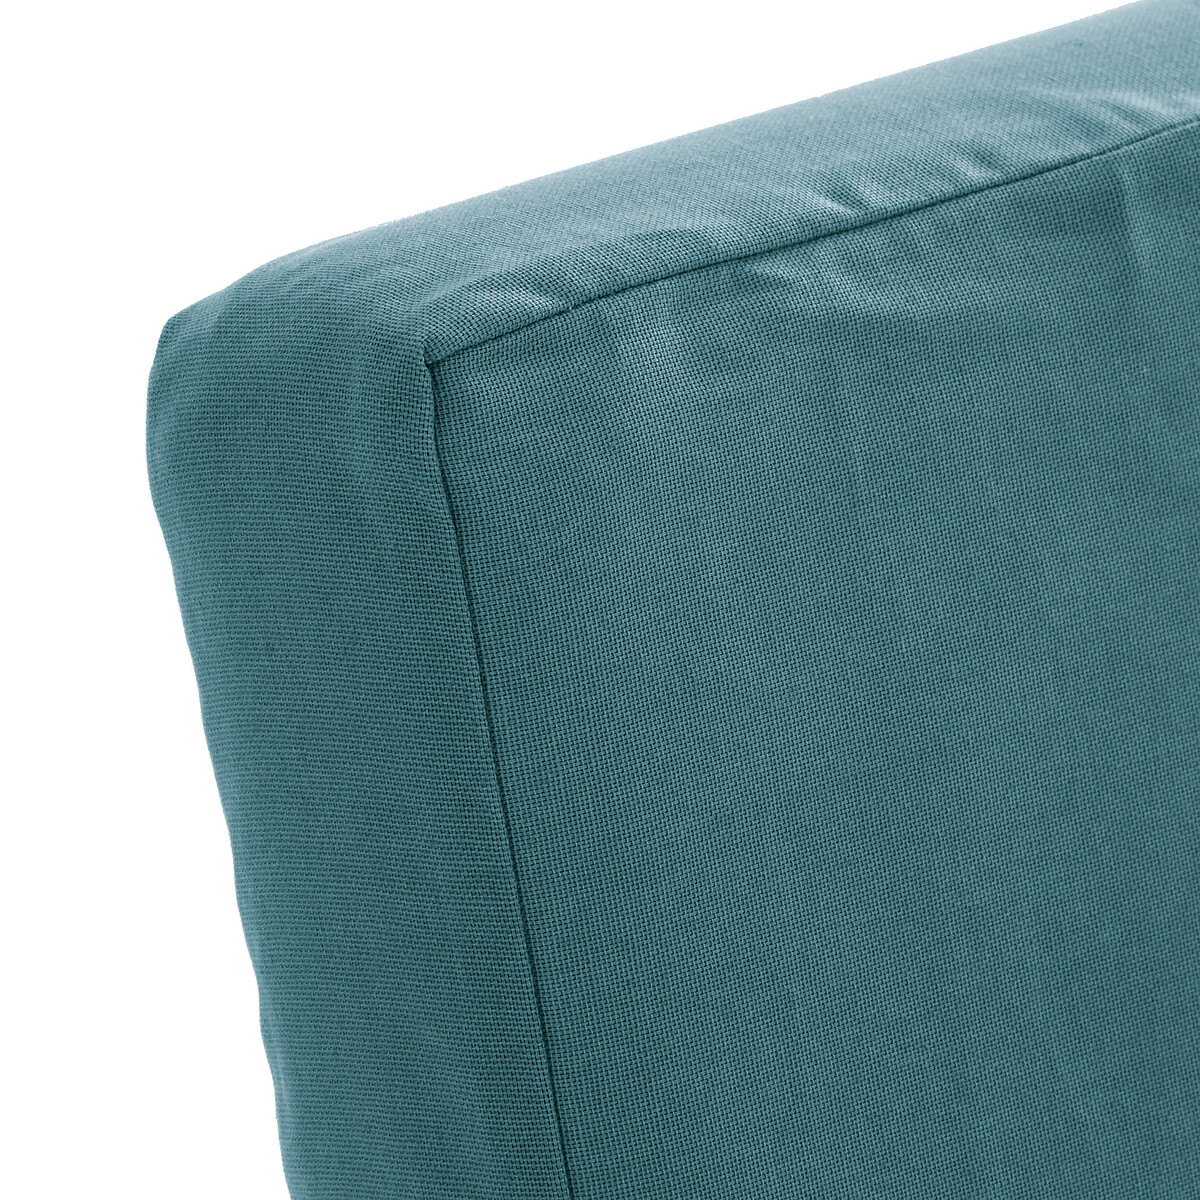 Чехол LaRedoute На стул из хлопка DOMME единый размер зеленый - фото 3